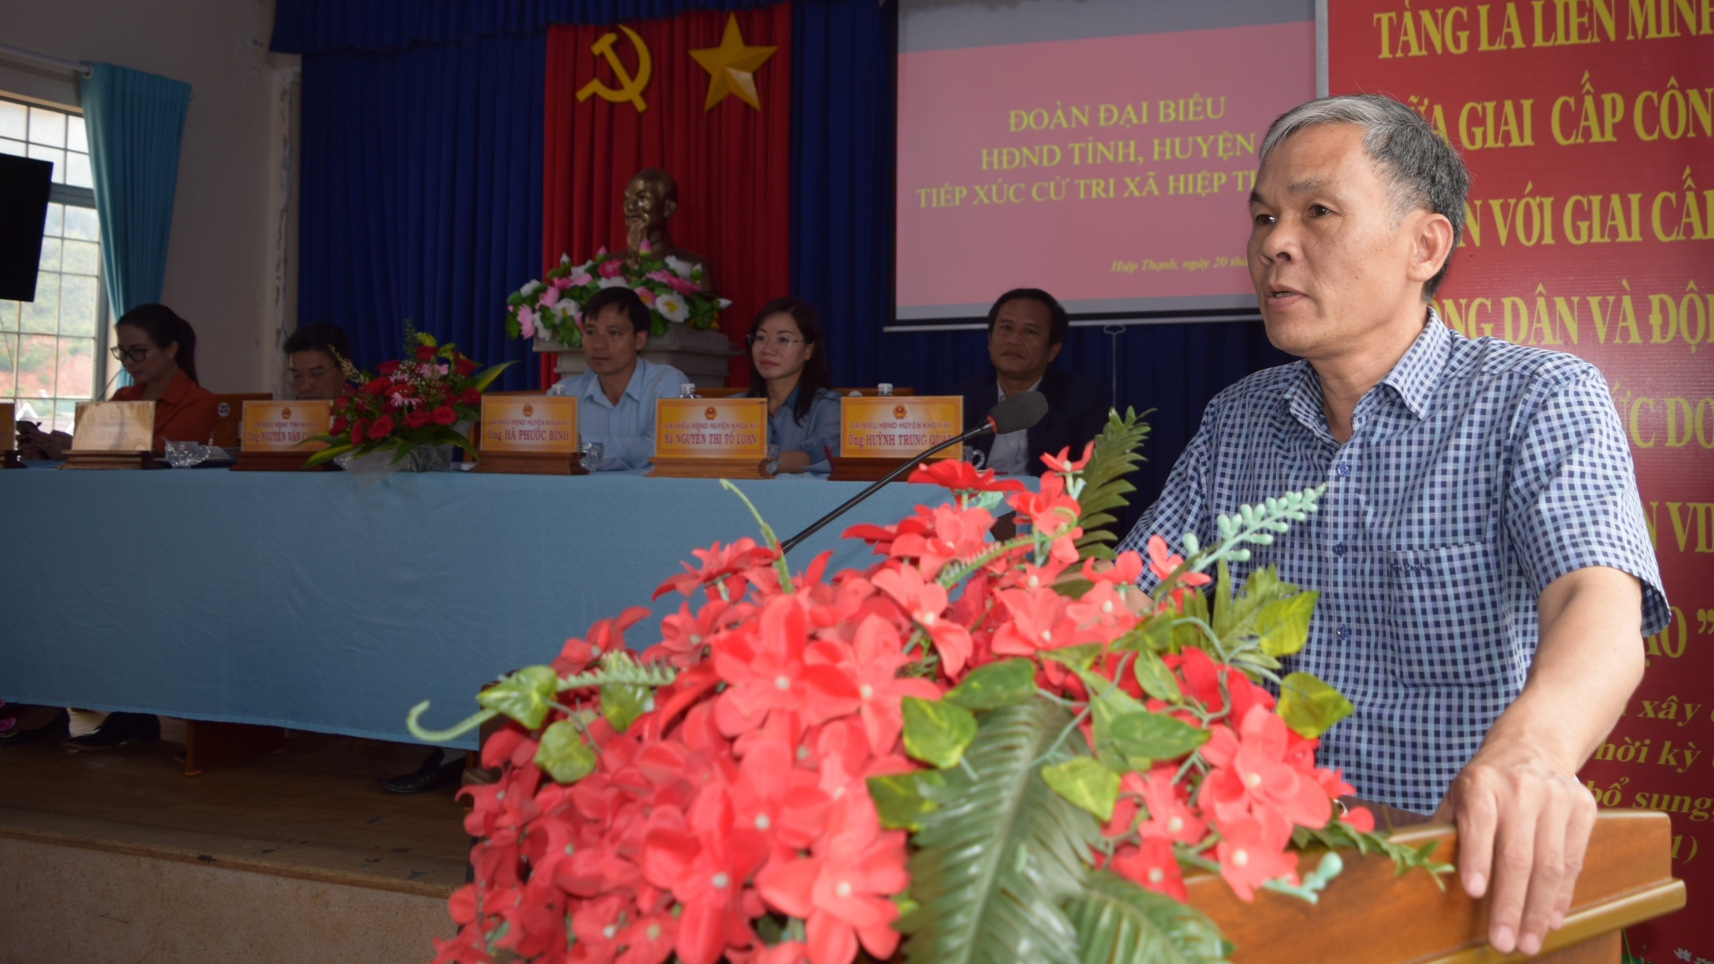 Đồng chí Nguyễn Văn Cường - Chủ tịch UBND huyện, tiếp thu, giải trì ý kiến cử tri